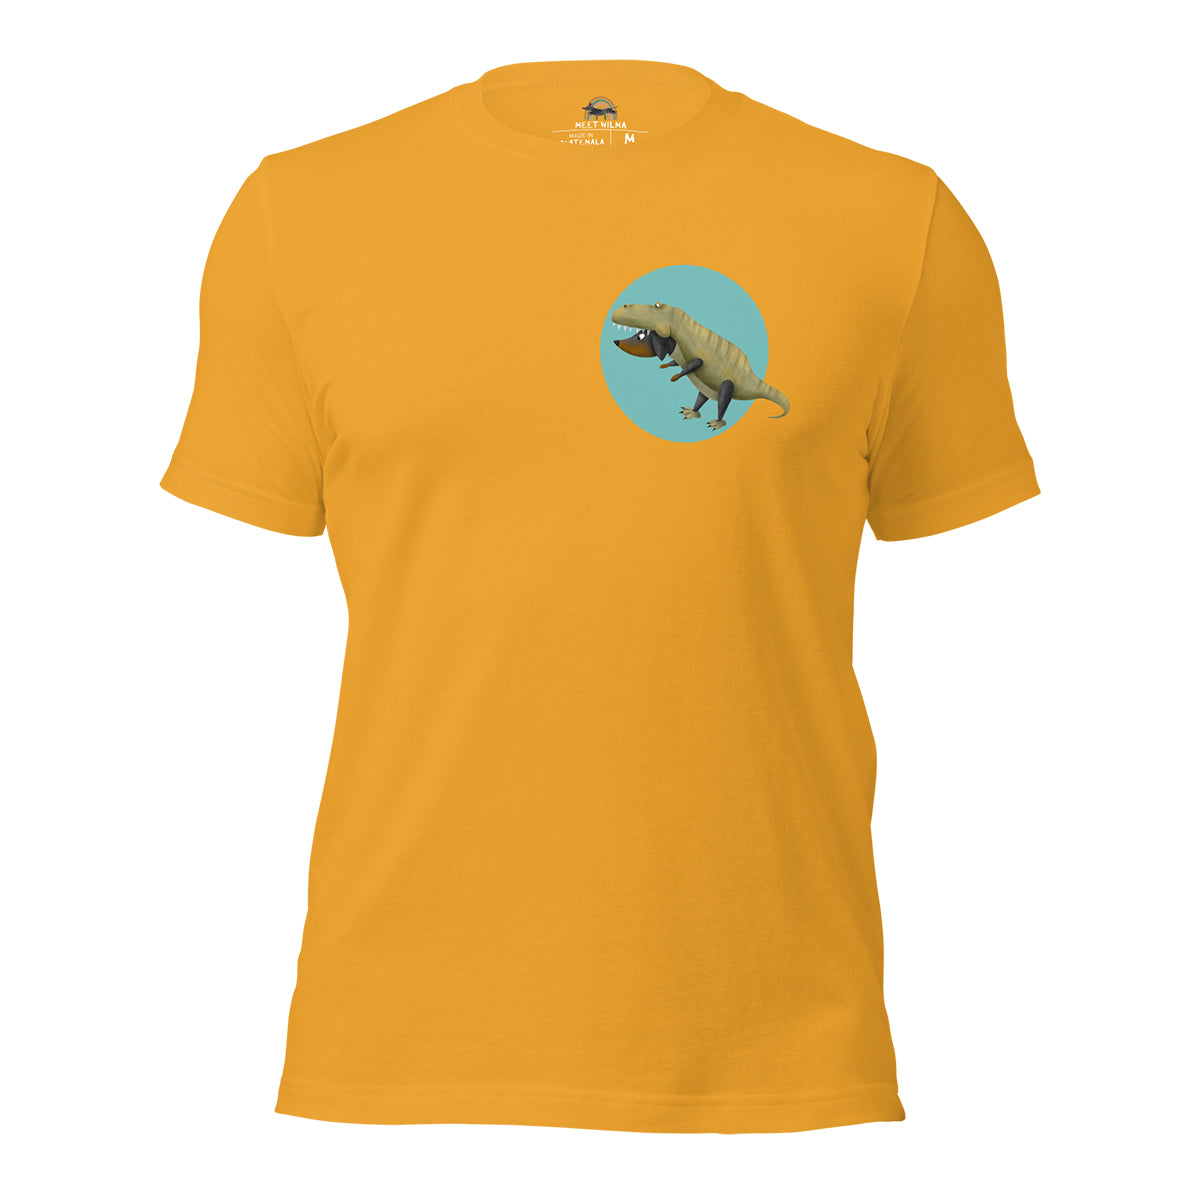 Unisex T-Shirt "D-Rex" Chest